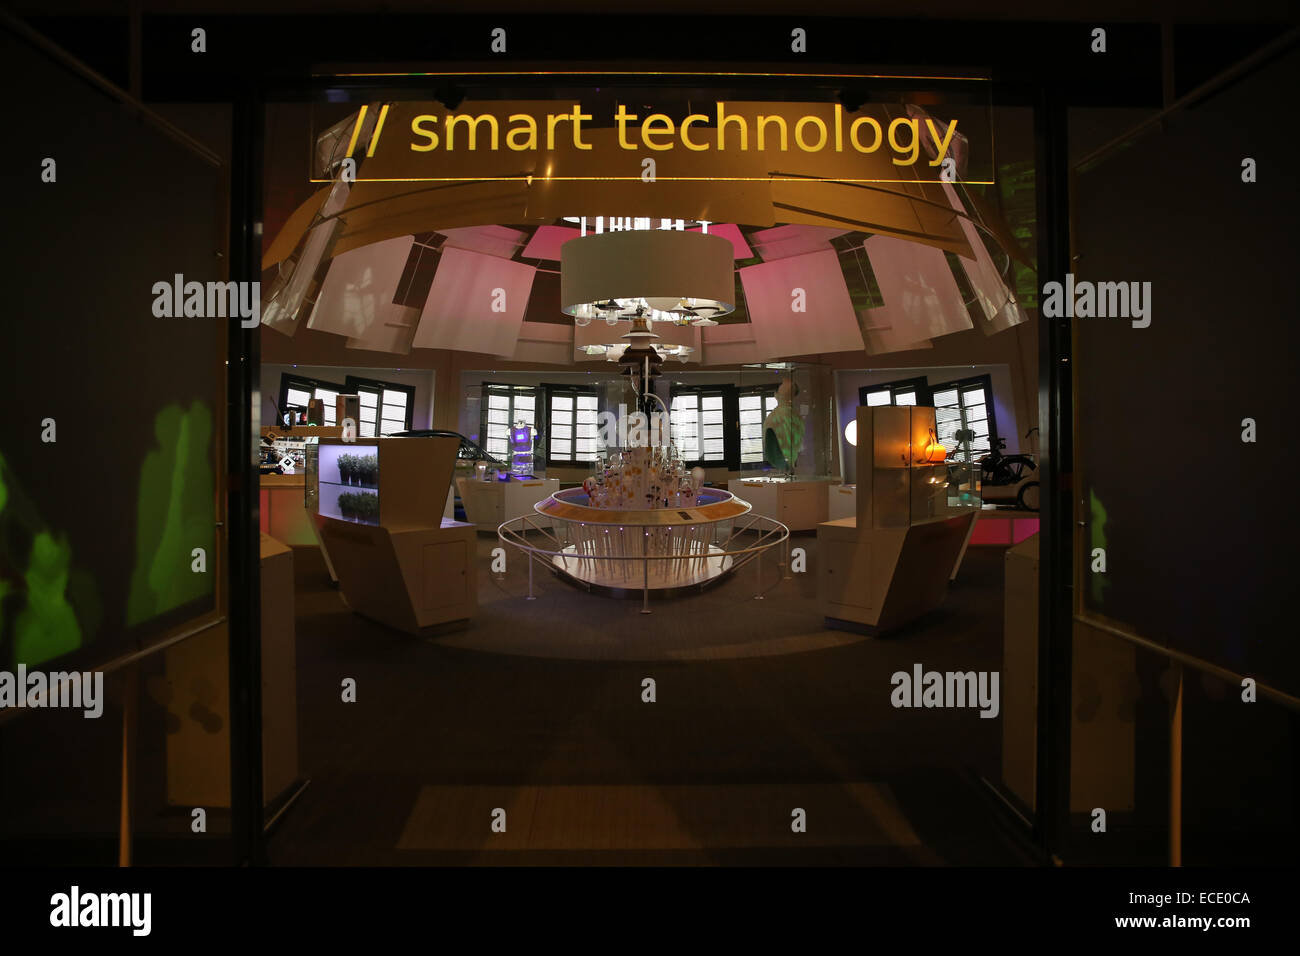 La technologie intelligente à l'intérieur de l'exposition science center Banque D'Images